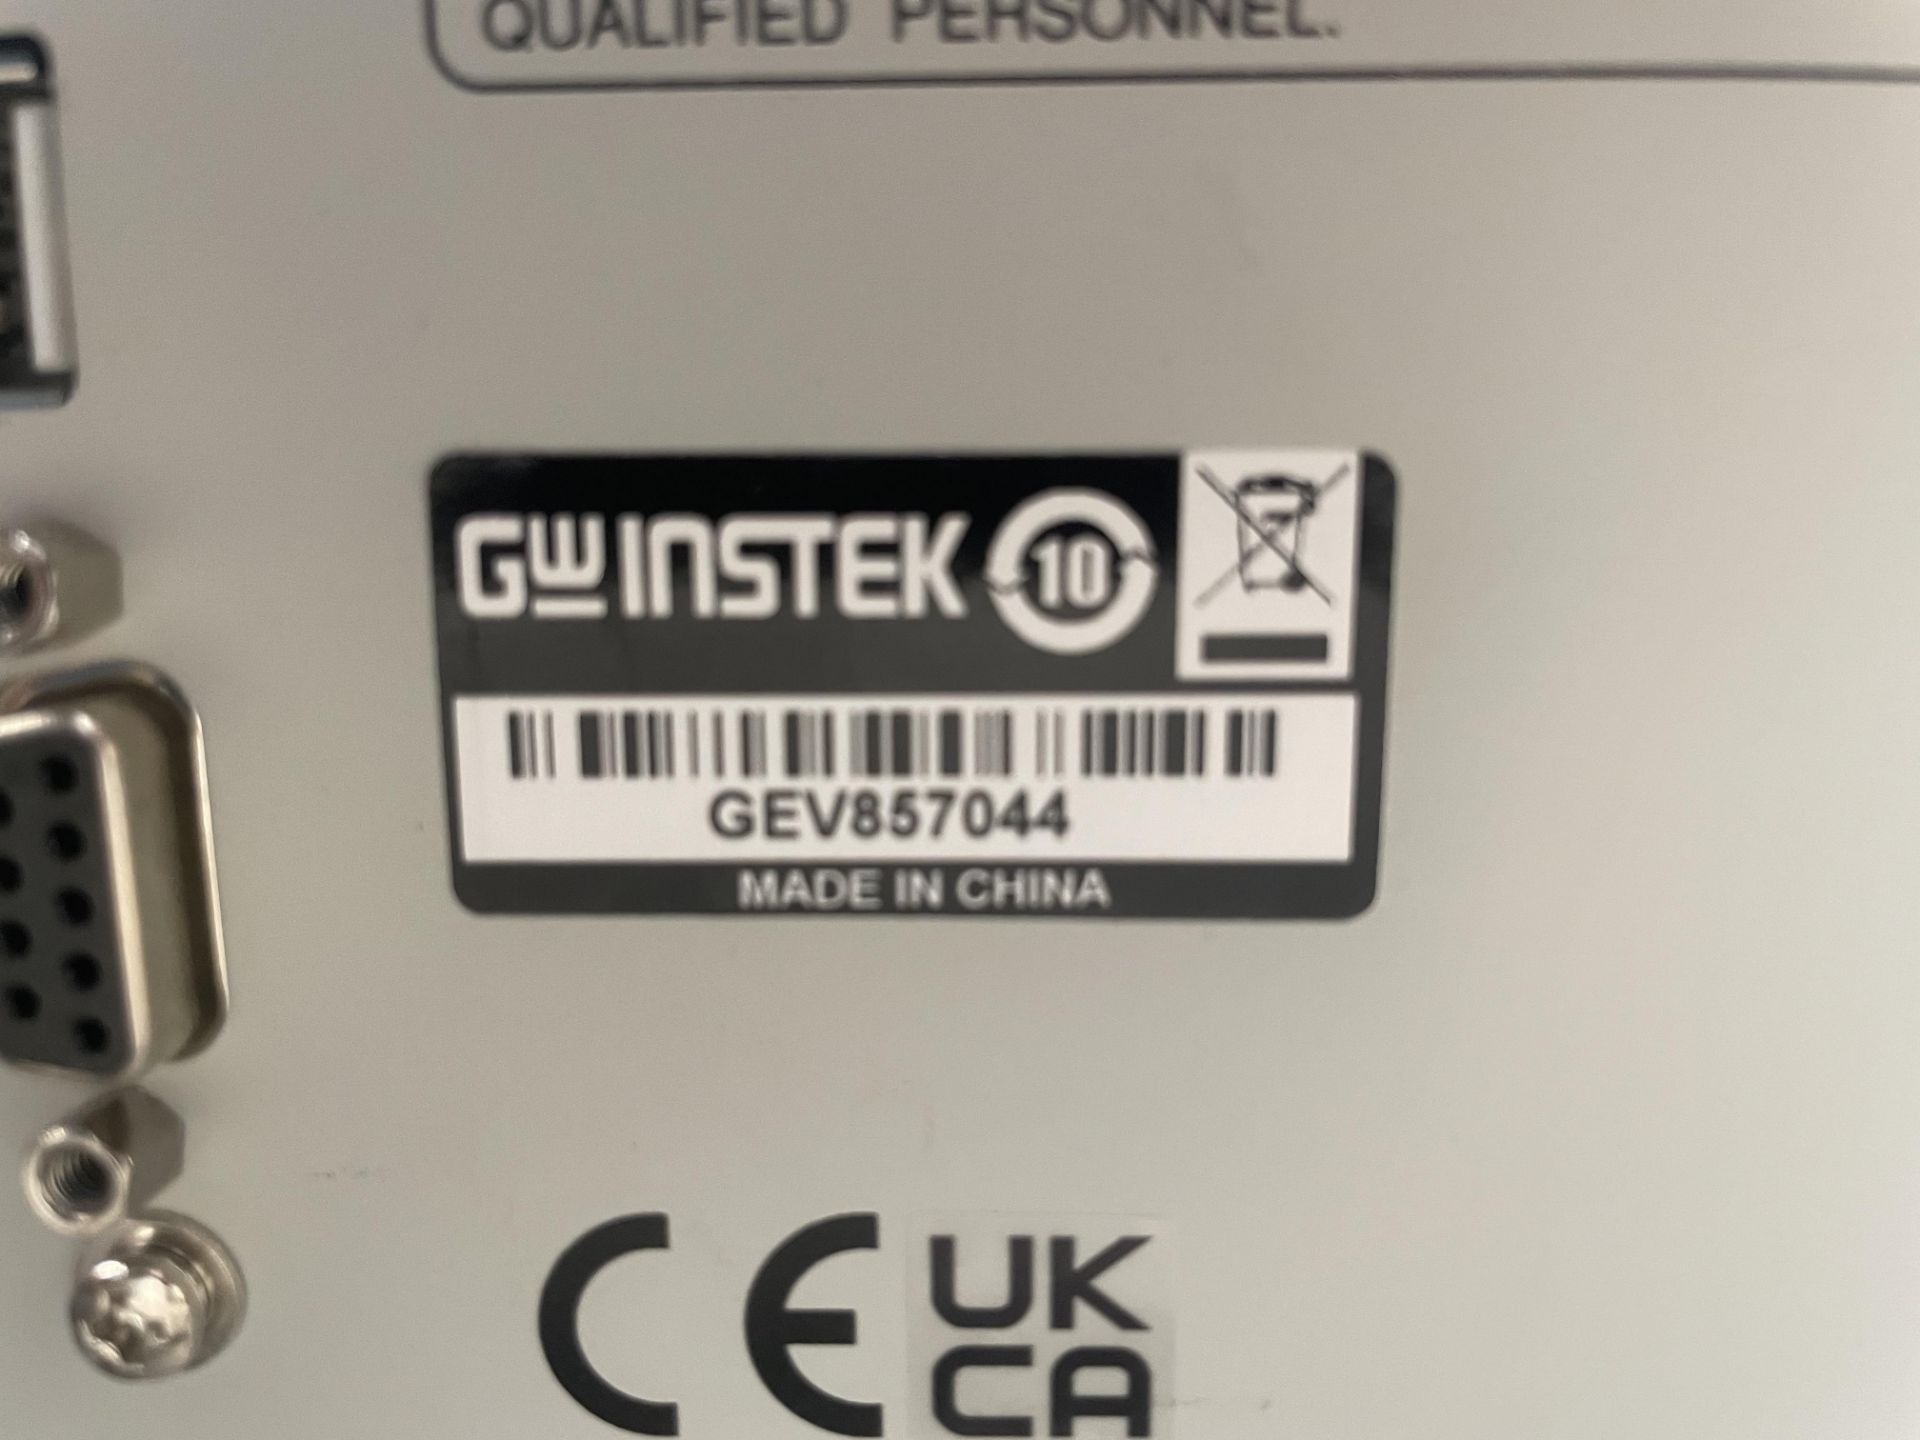 GW Instek GPTR-9602 AC/DC withstanding voltage tester - Image 3 of 3